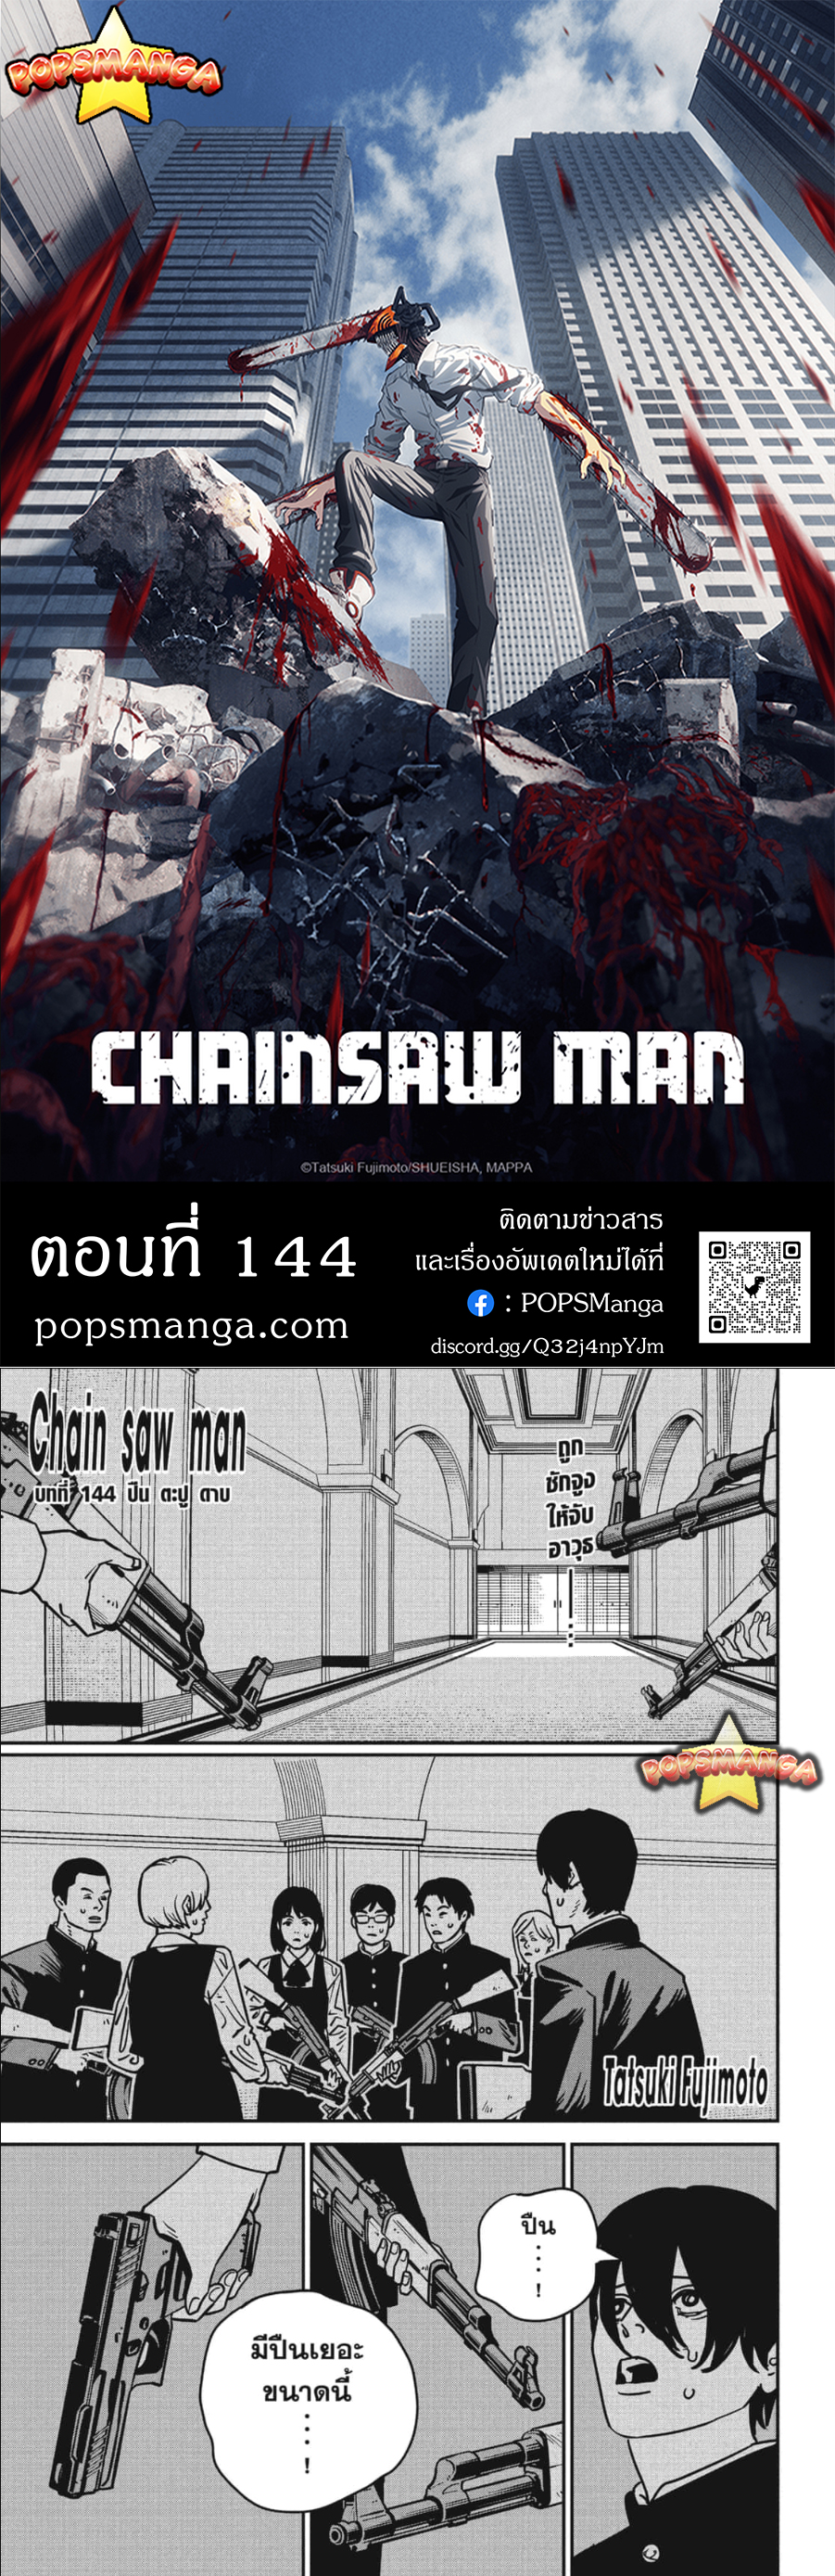 Chainsaw Man 144 01